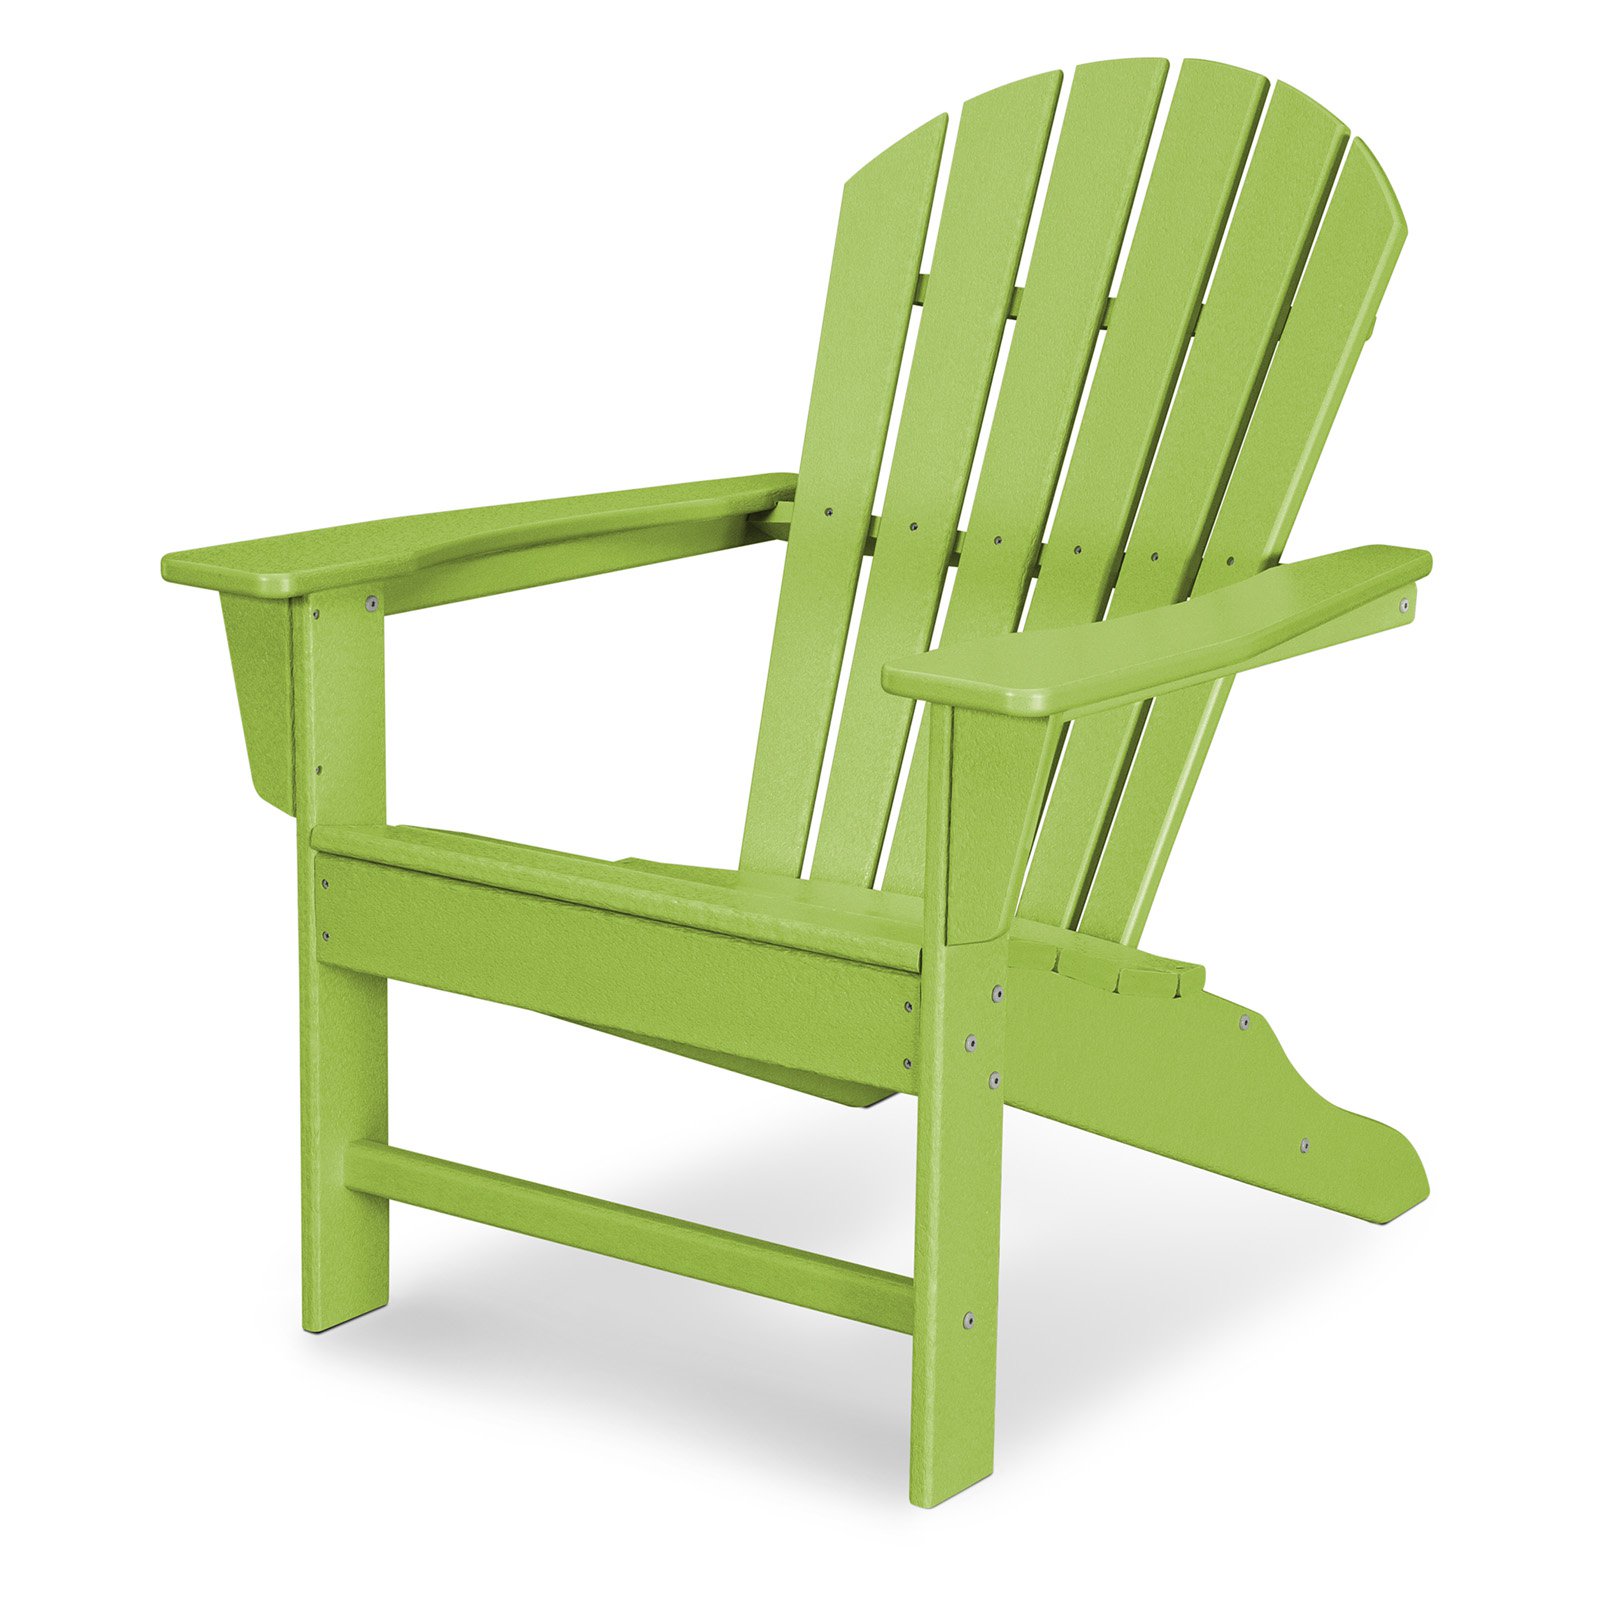 POLYWOOD SBA15LI South Beach Adirondack Chair - Lime - image 1 of 11